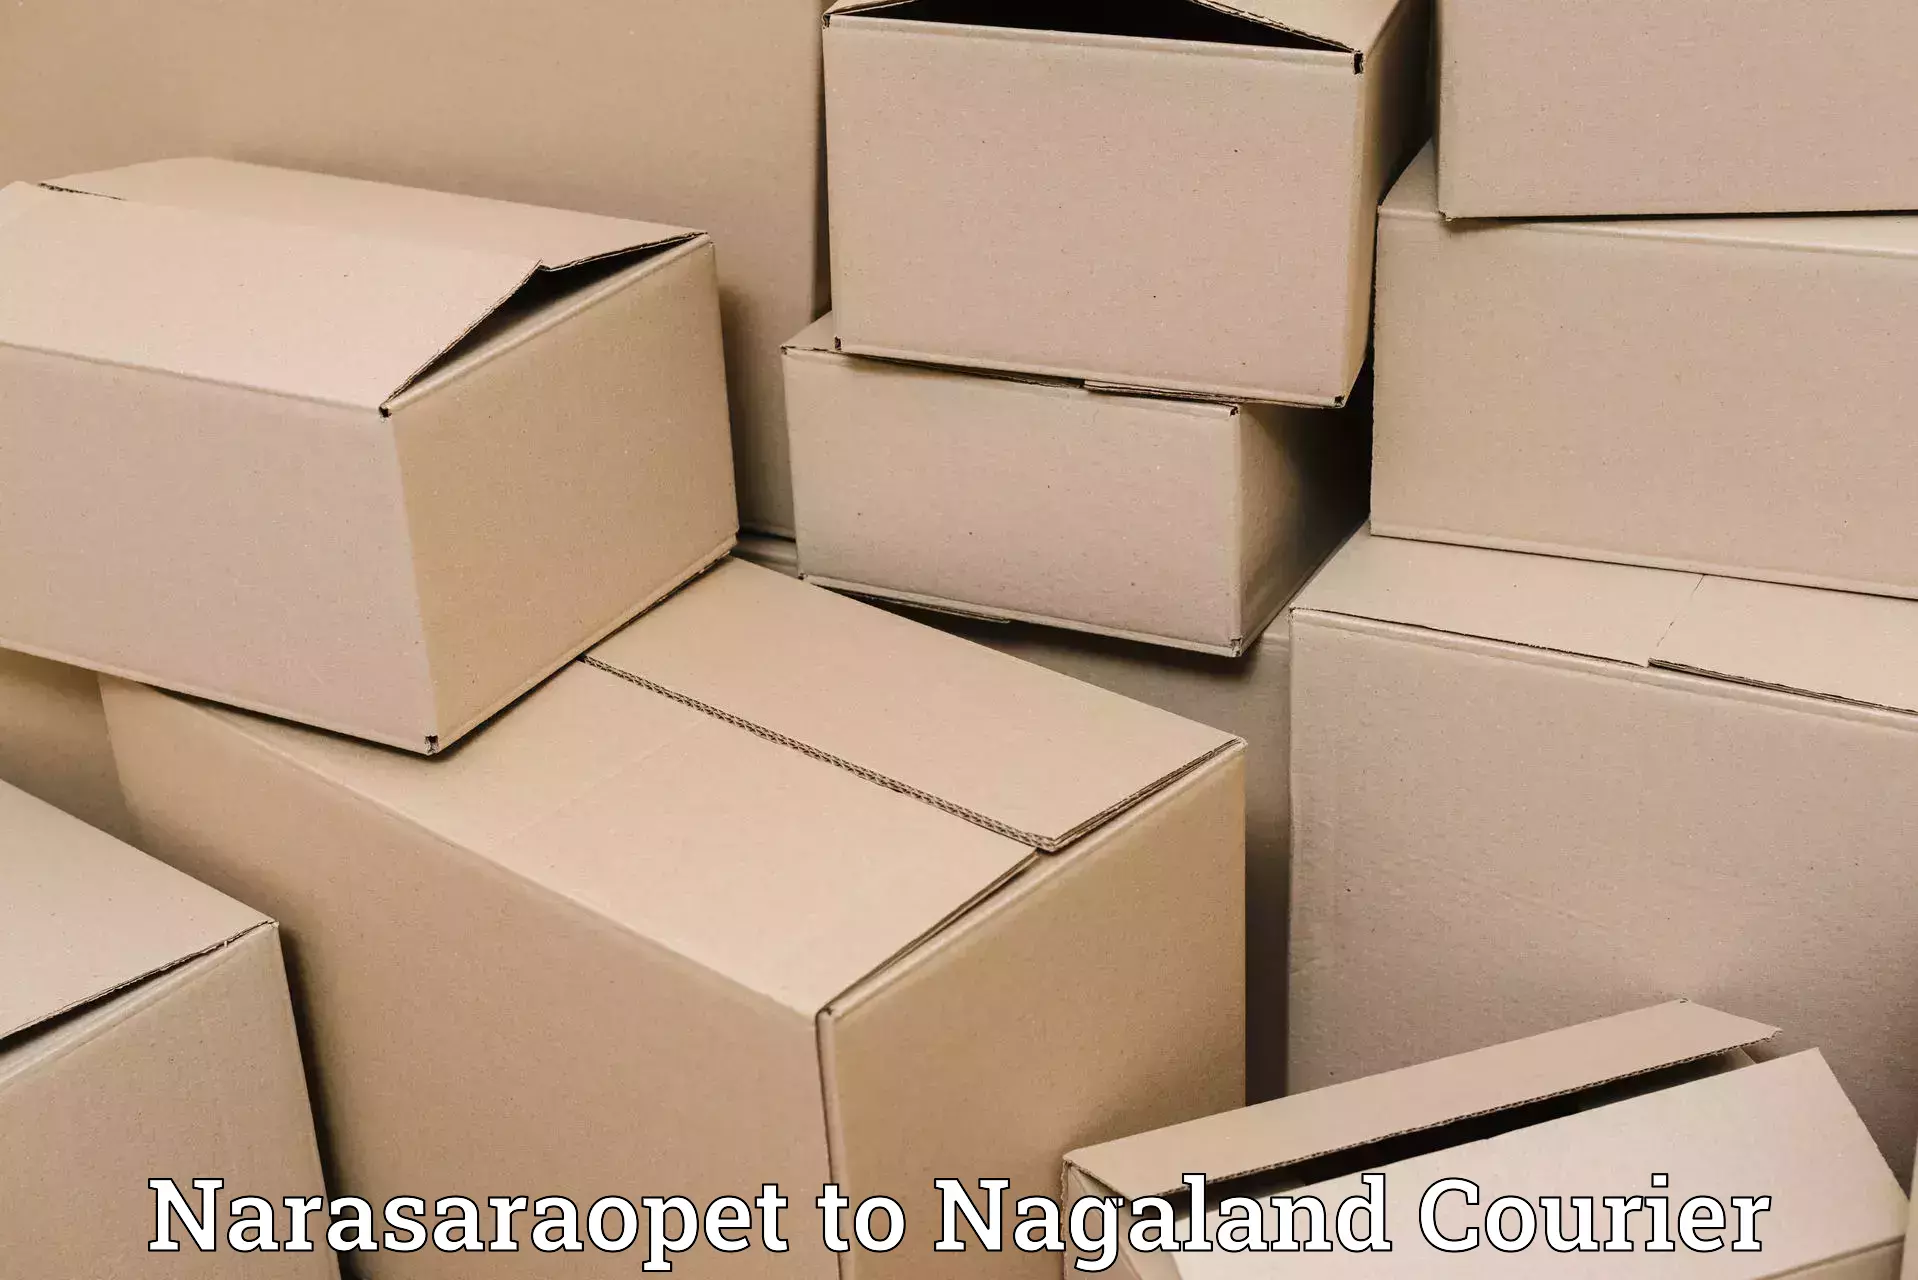 Tech-enabled shipping Narasaraopet to NIT Nagaland